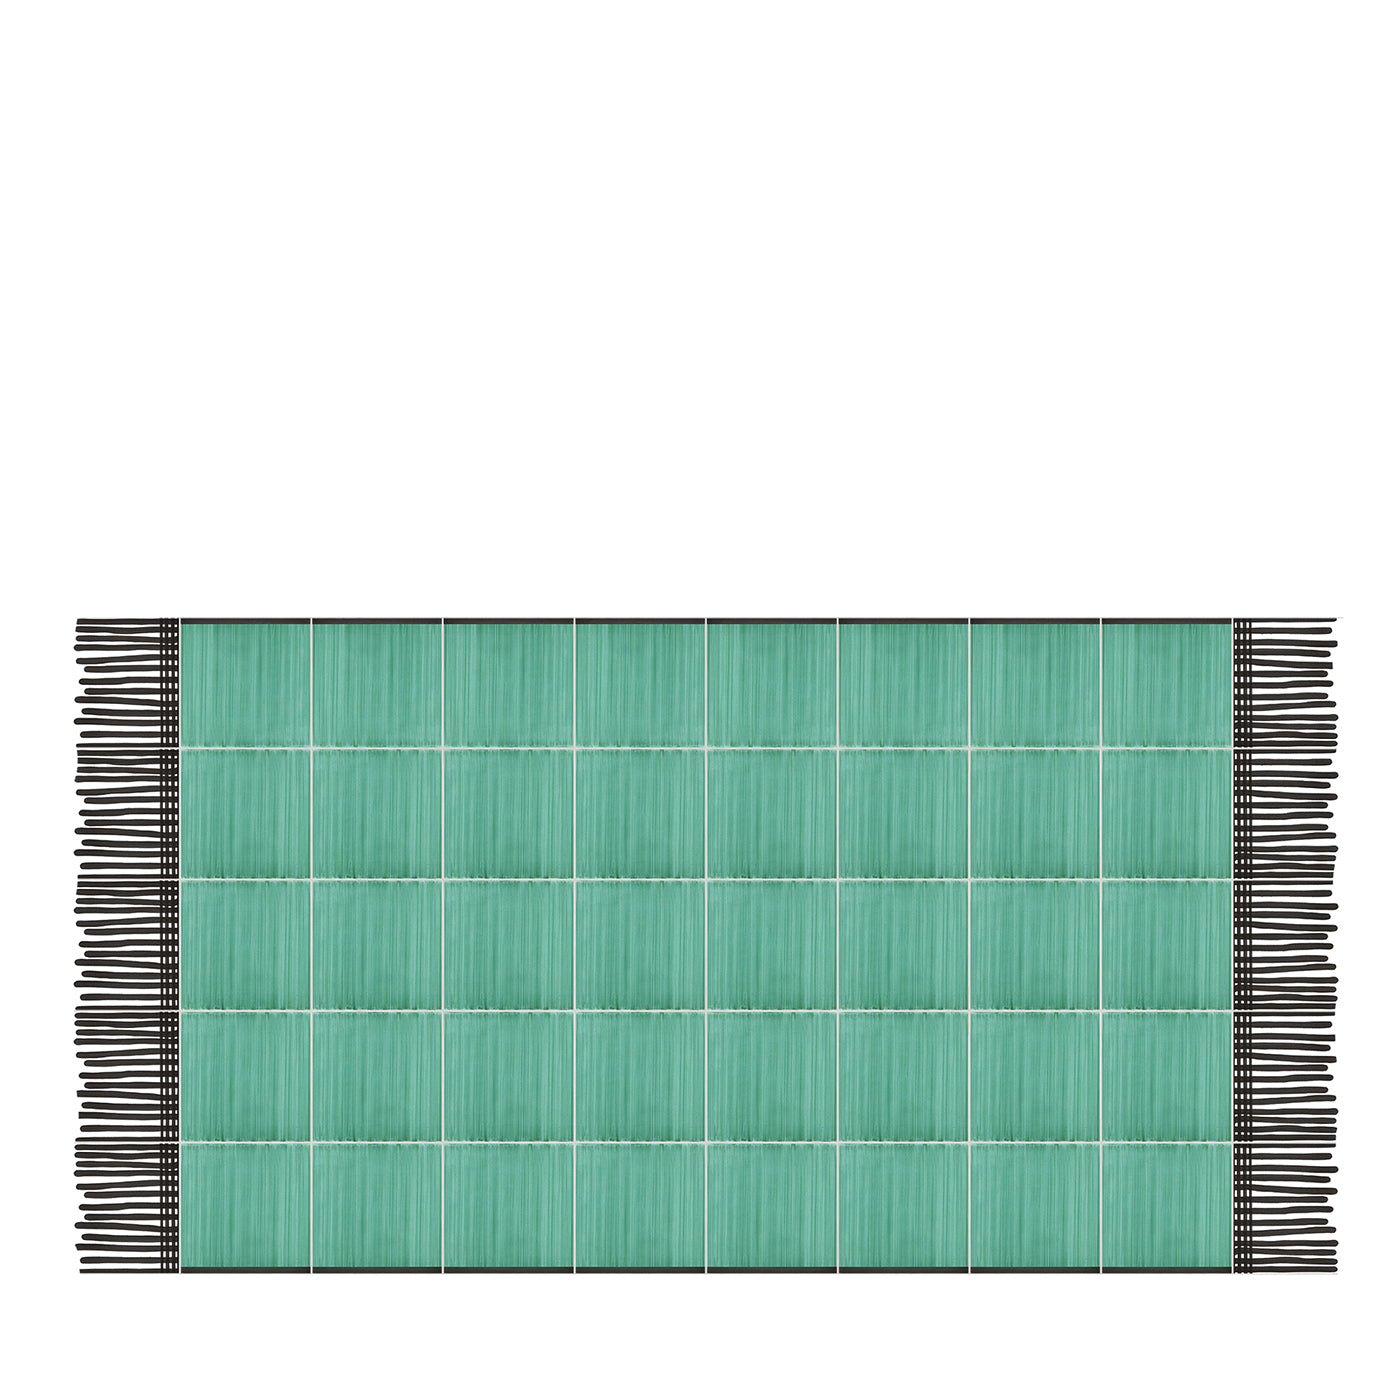 Carpet Green Ceramic Composition by Giuliano Andrea dell’Uva 200 x 100 - Main view